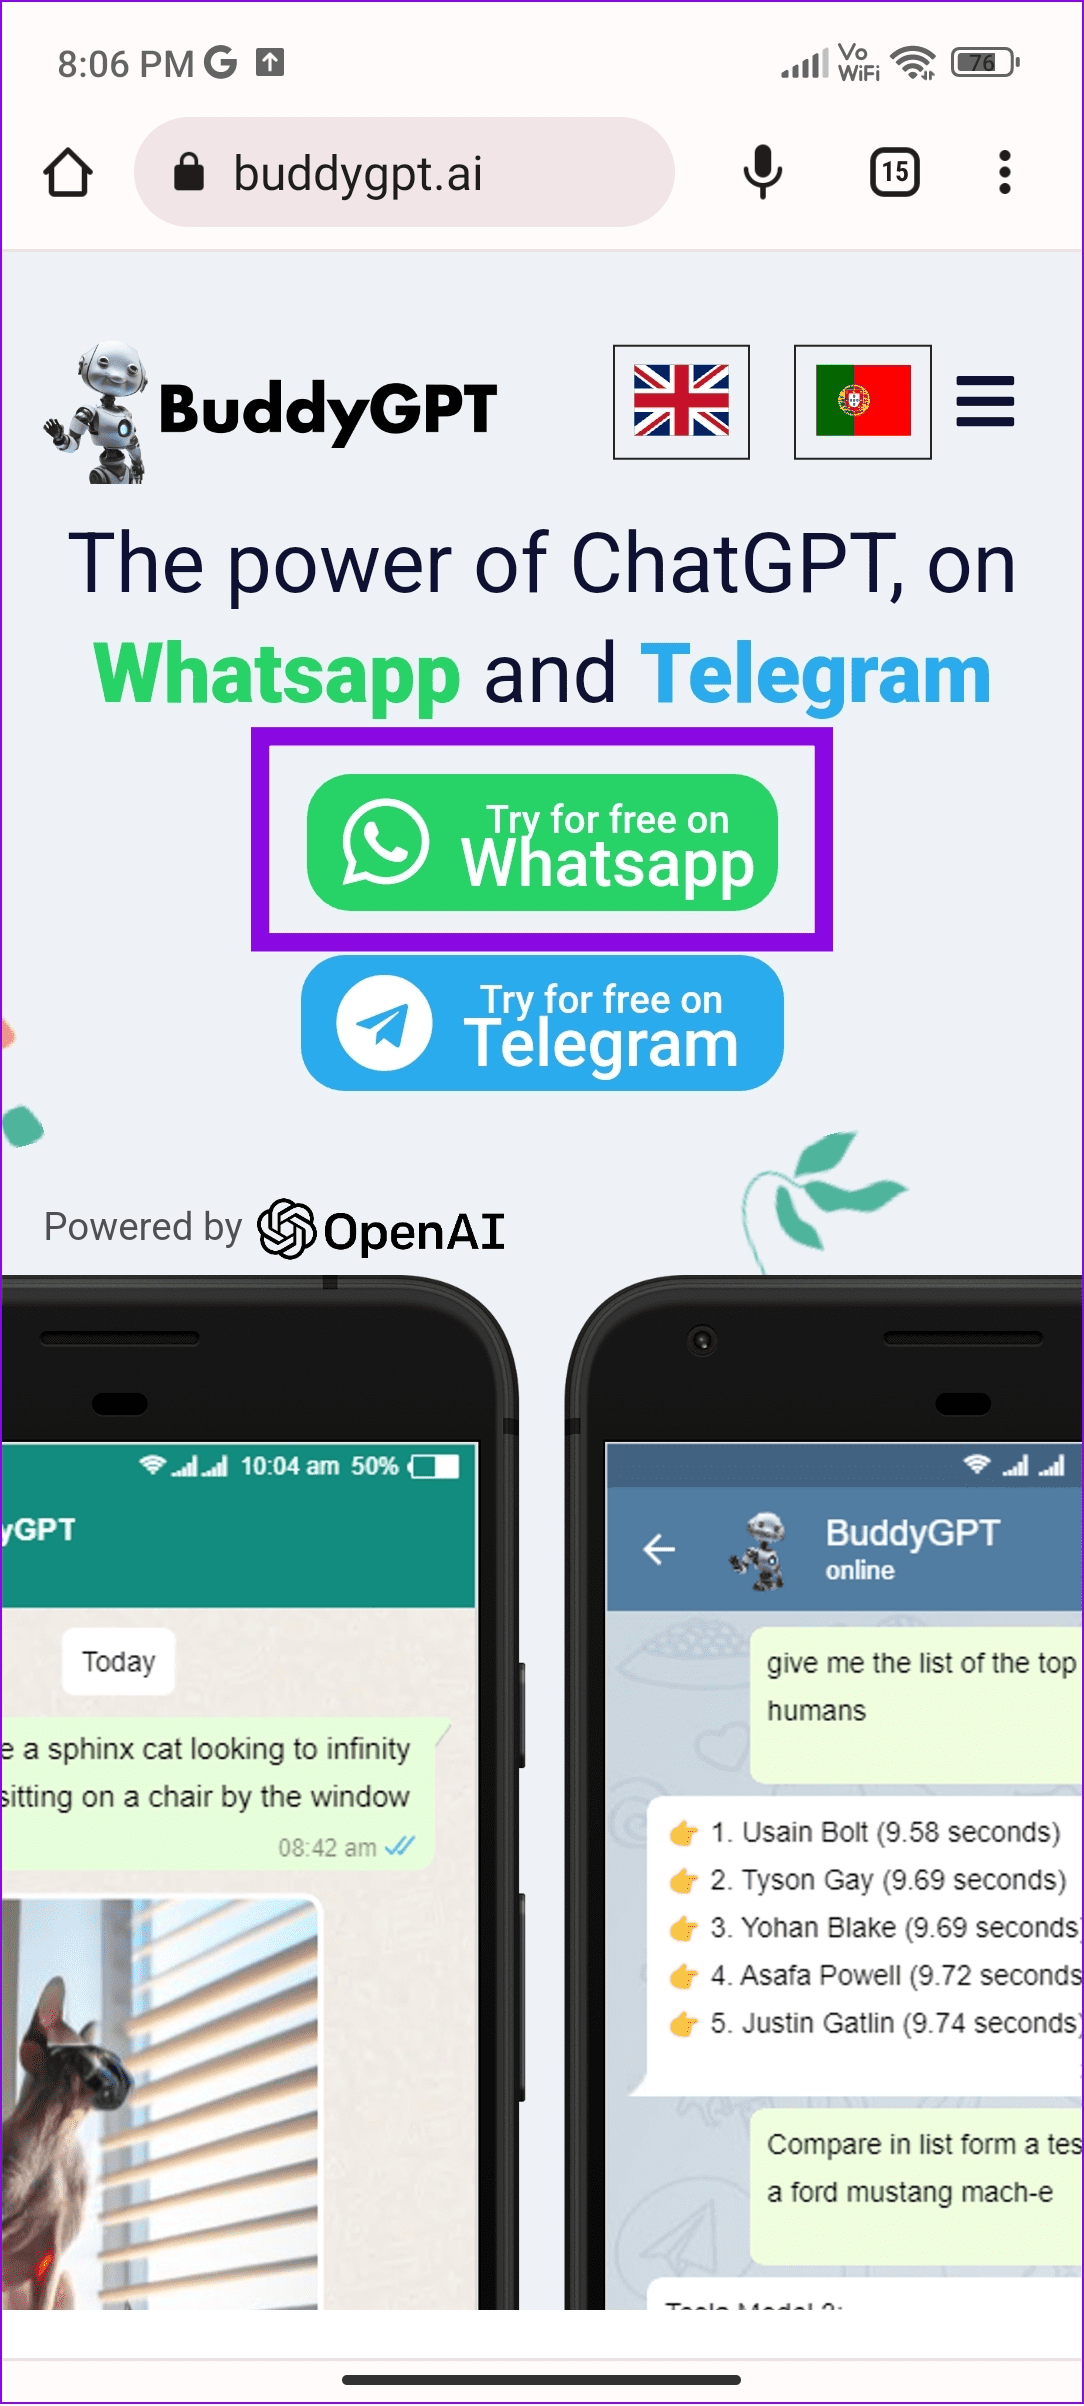 WhatsApp で ChatGPT を使用する 2 つの簡単な方法